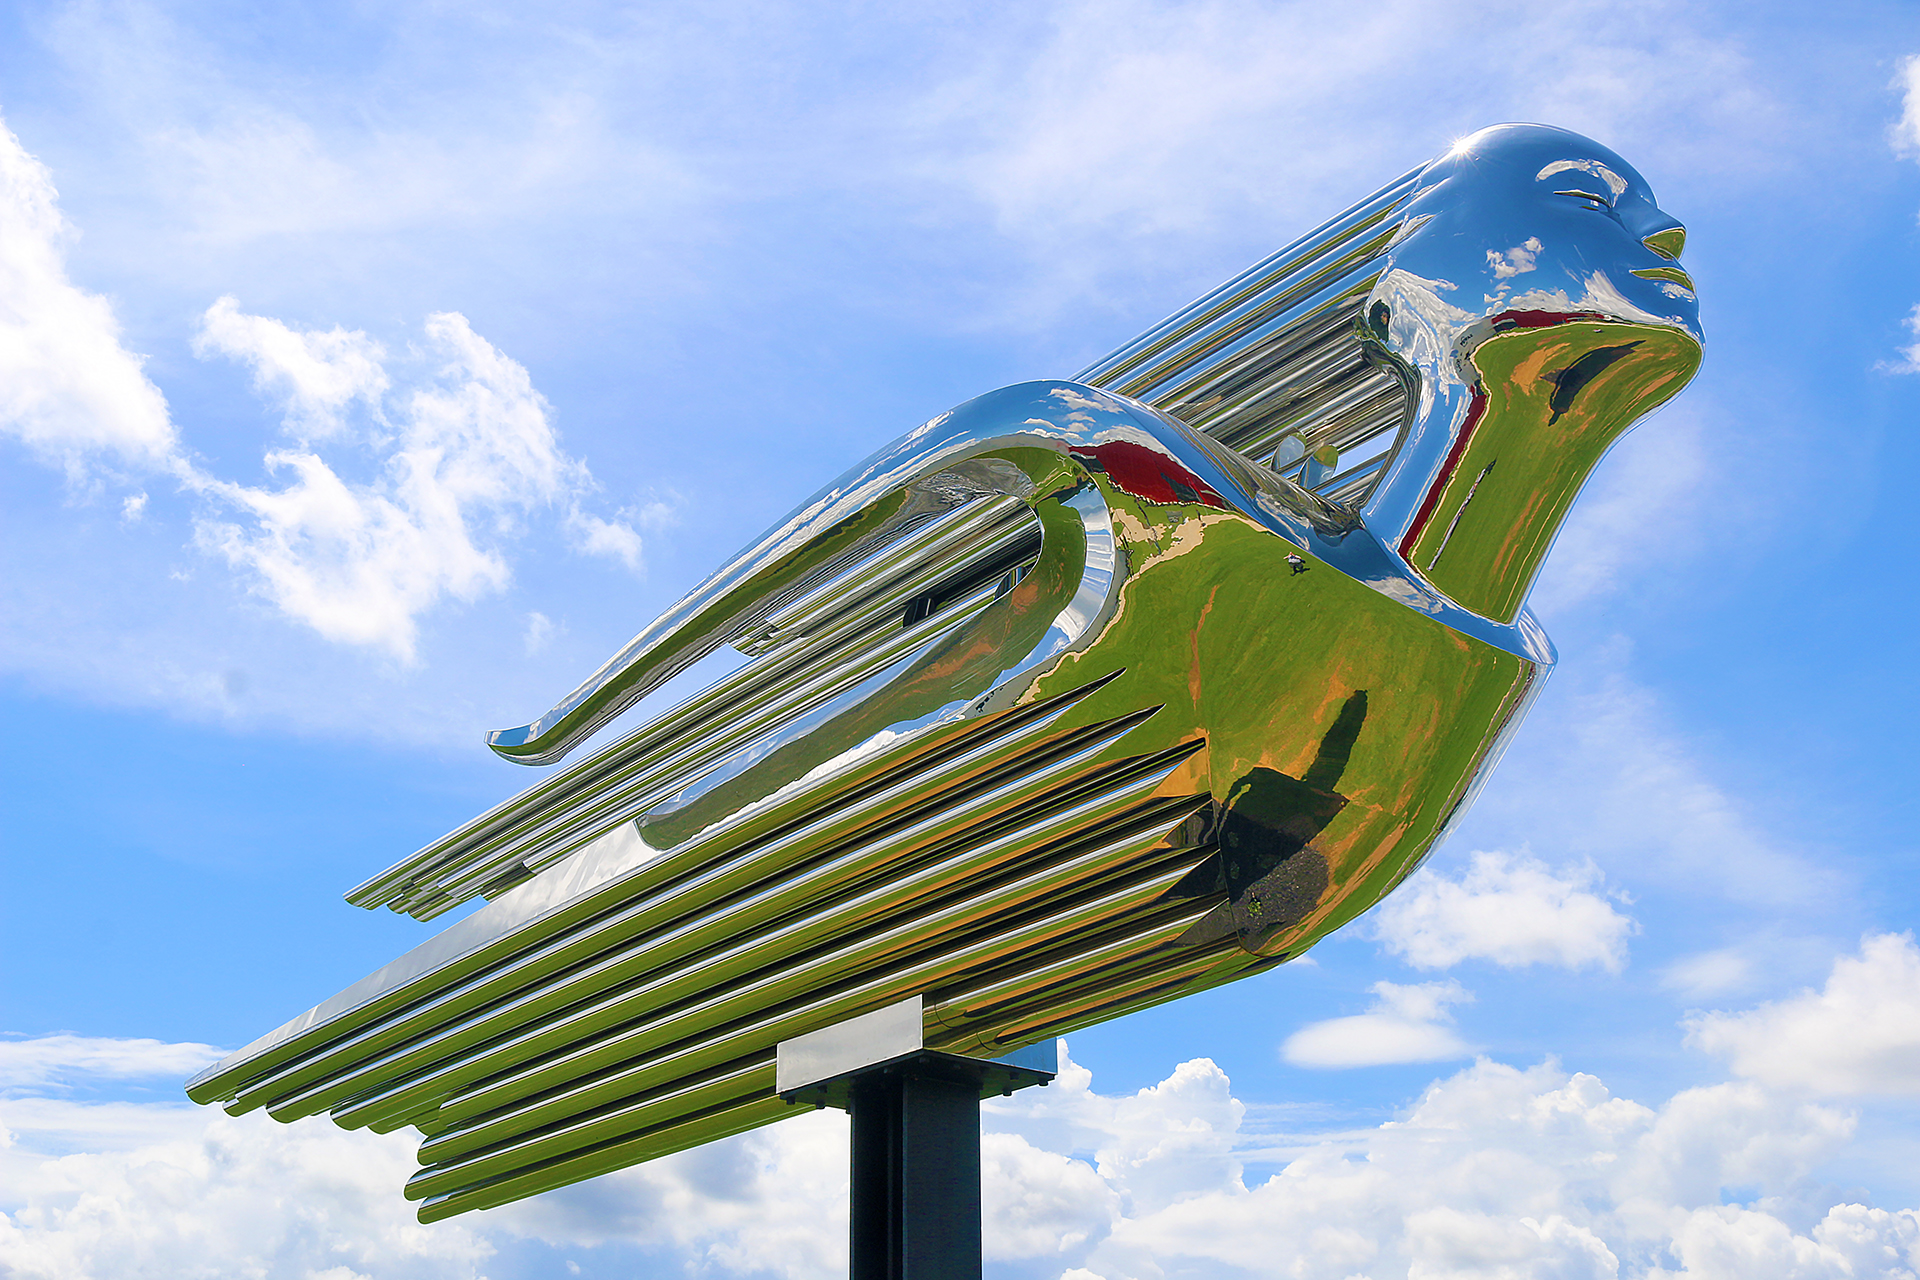 a metal sculpture of a bird